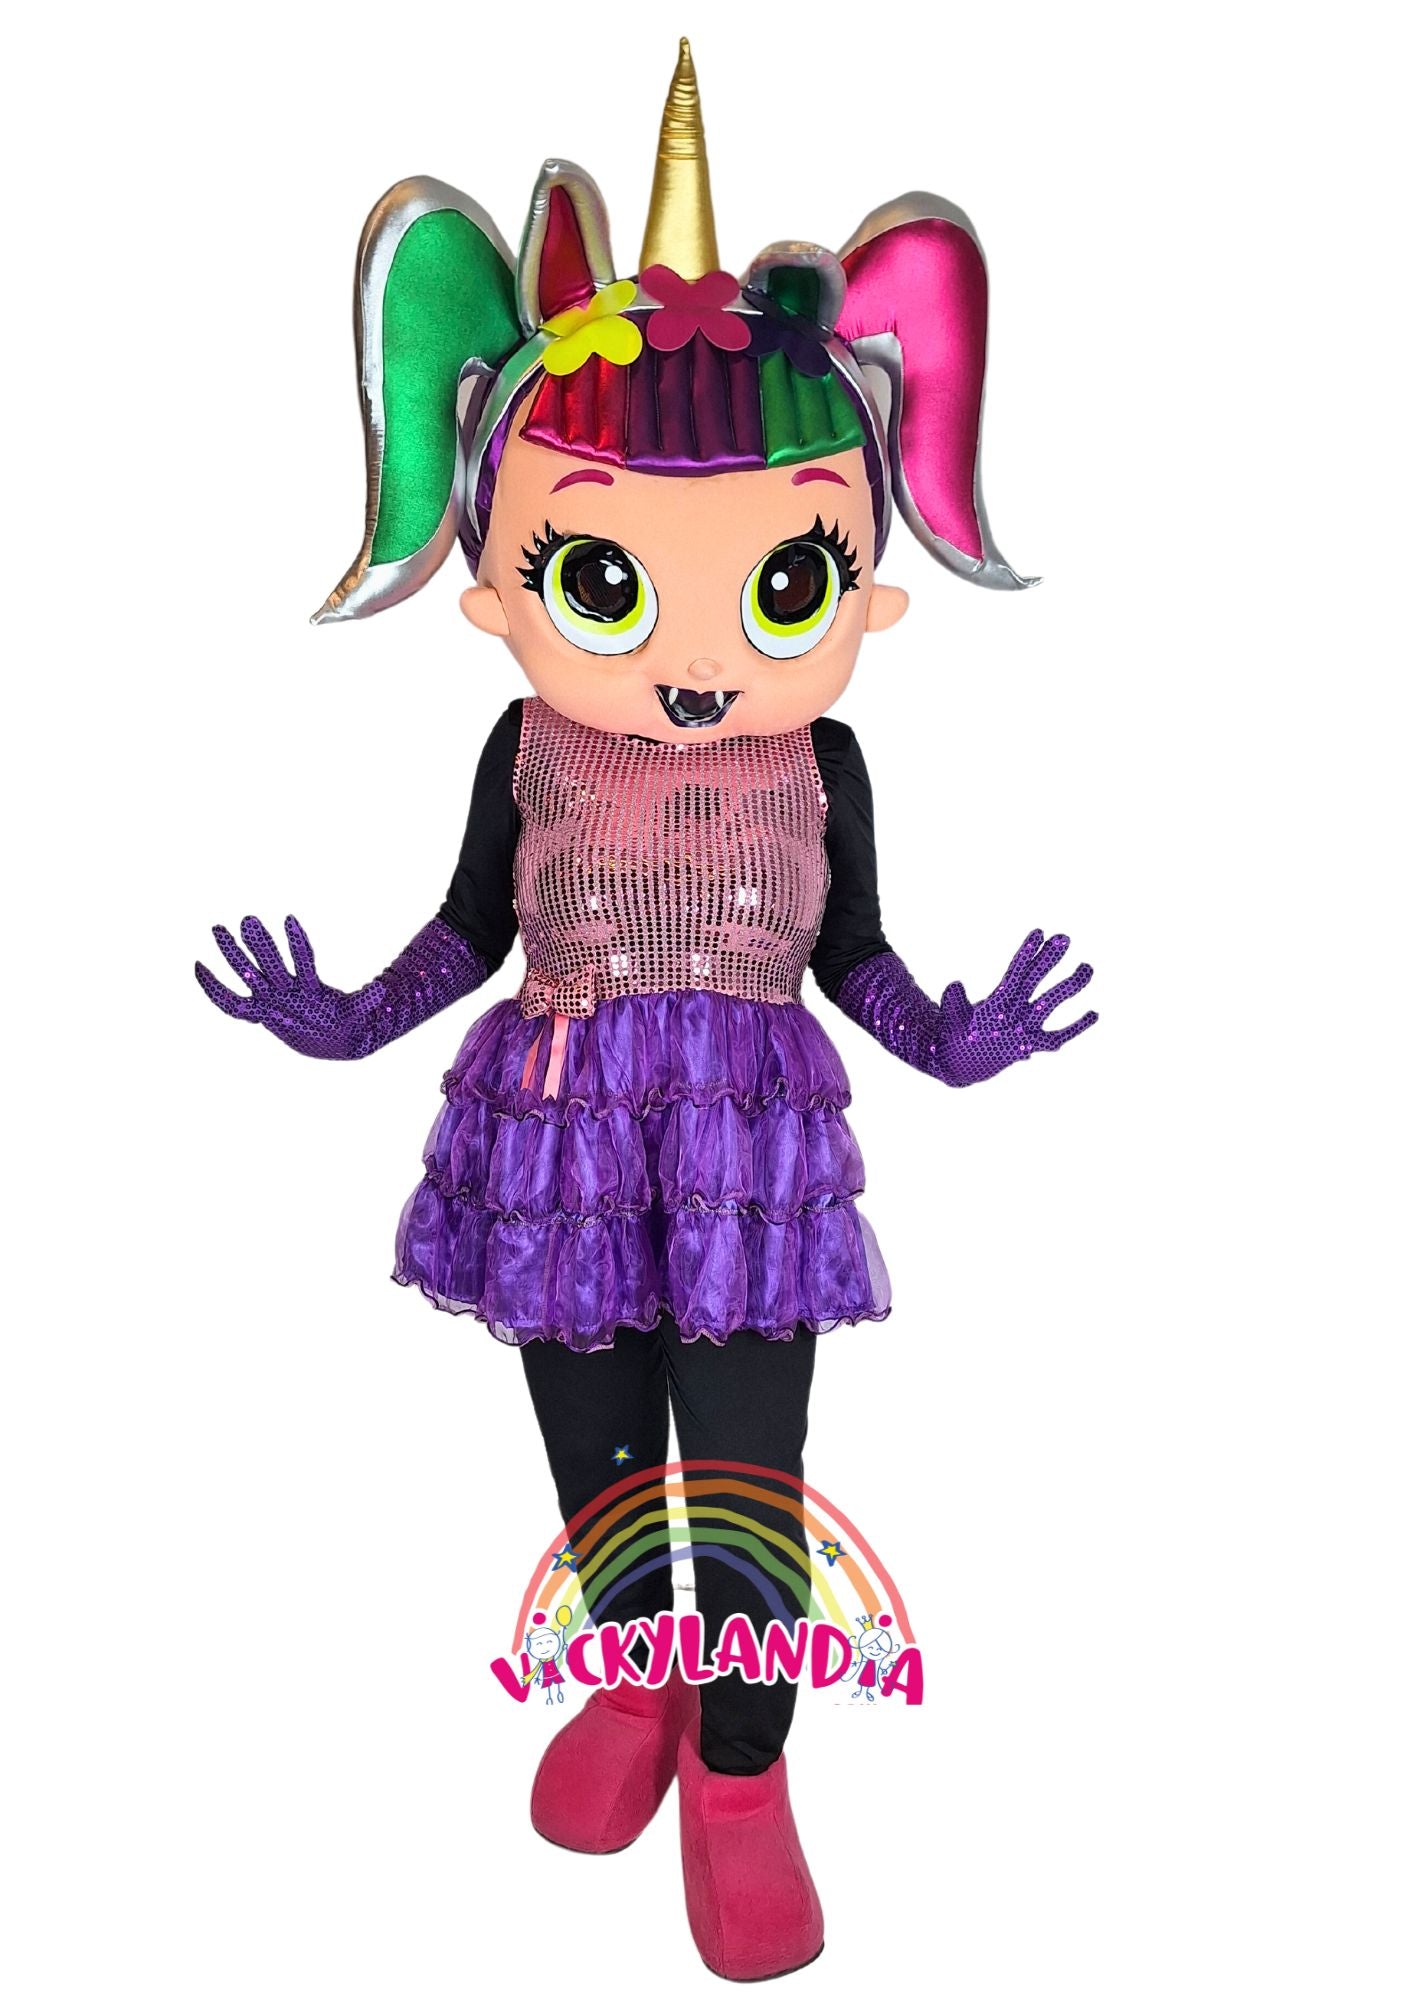 Descubre la magia de nuestro muñeco publicitario de Muñeca Unicornio Glitter en Vickylandia. Son disfraces cabezones perfectos para fiestas infantiles, shows, cumpleaños, estrategias publicitarias, espectáculos, cabalgatas y cualquier tipo de evento.